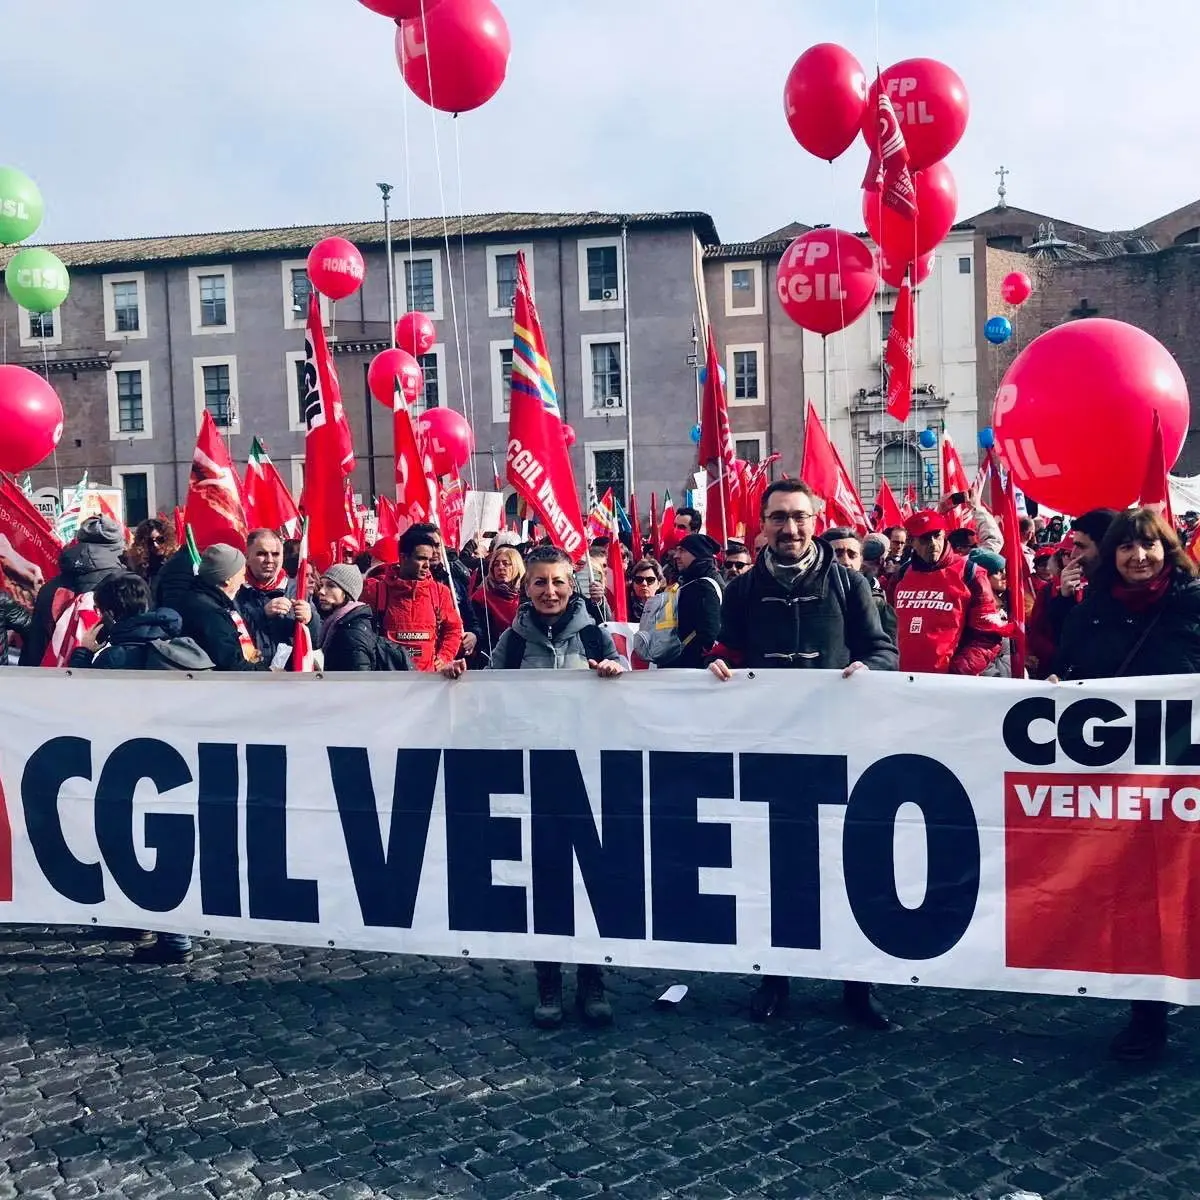 Mestre, Cgil Cisl e Uil Veneto oggi in piazza per cambiare la Legge di Bilancio